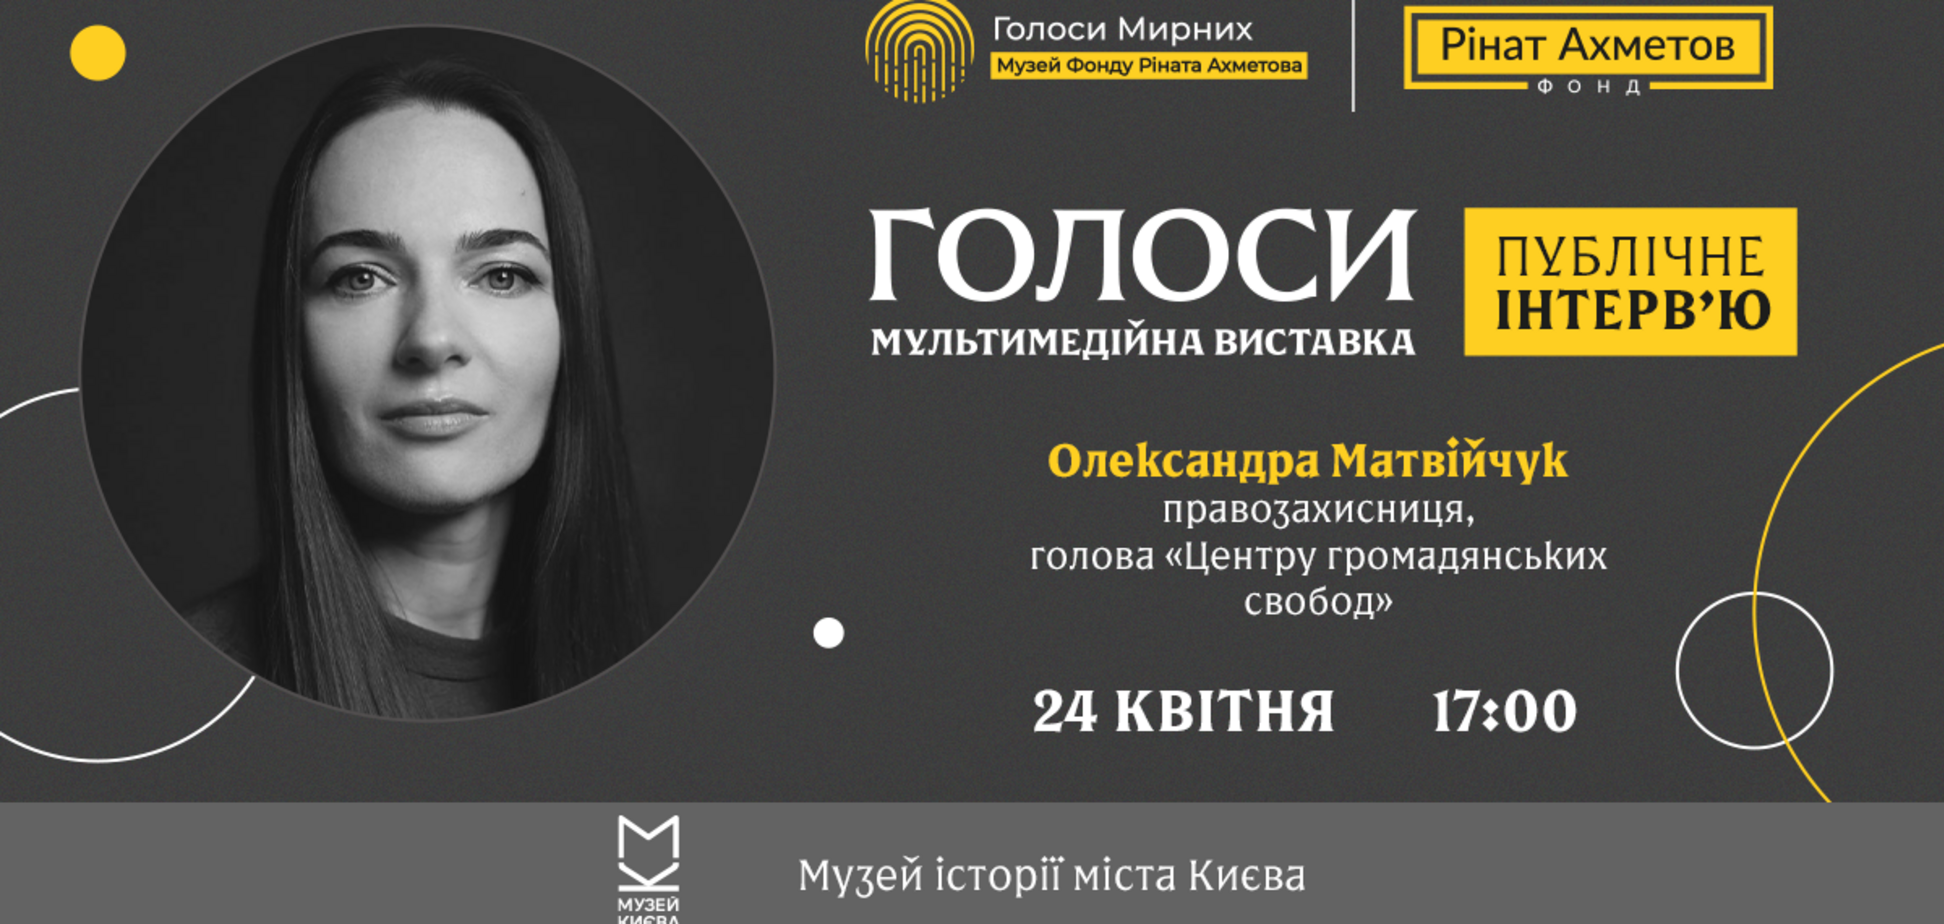 Правозащитница Матвийчук даст публичное интервью на выставке 'Голоса' музея 'Голоса мирных' Фонда Рината Ахметова